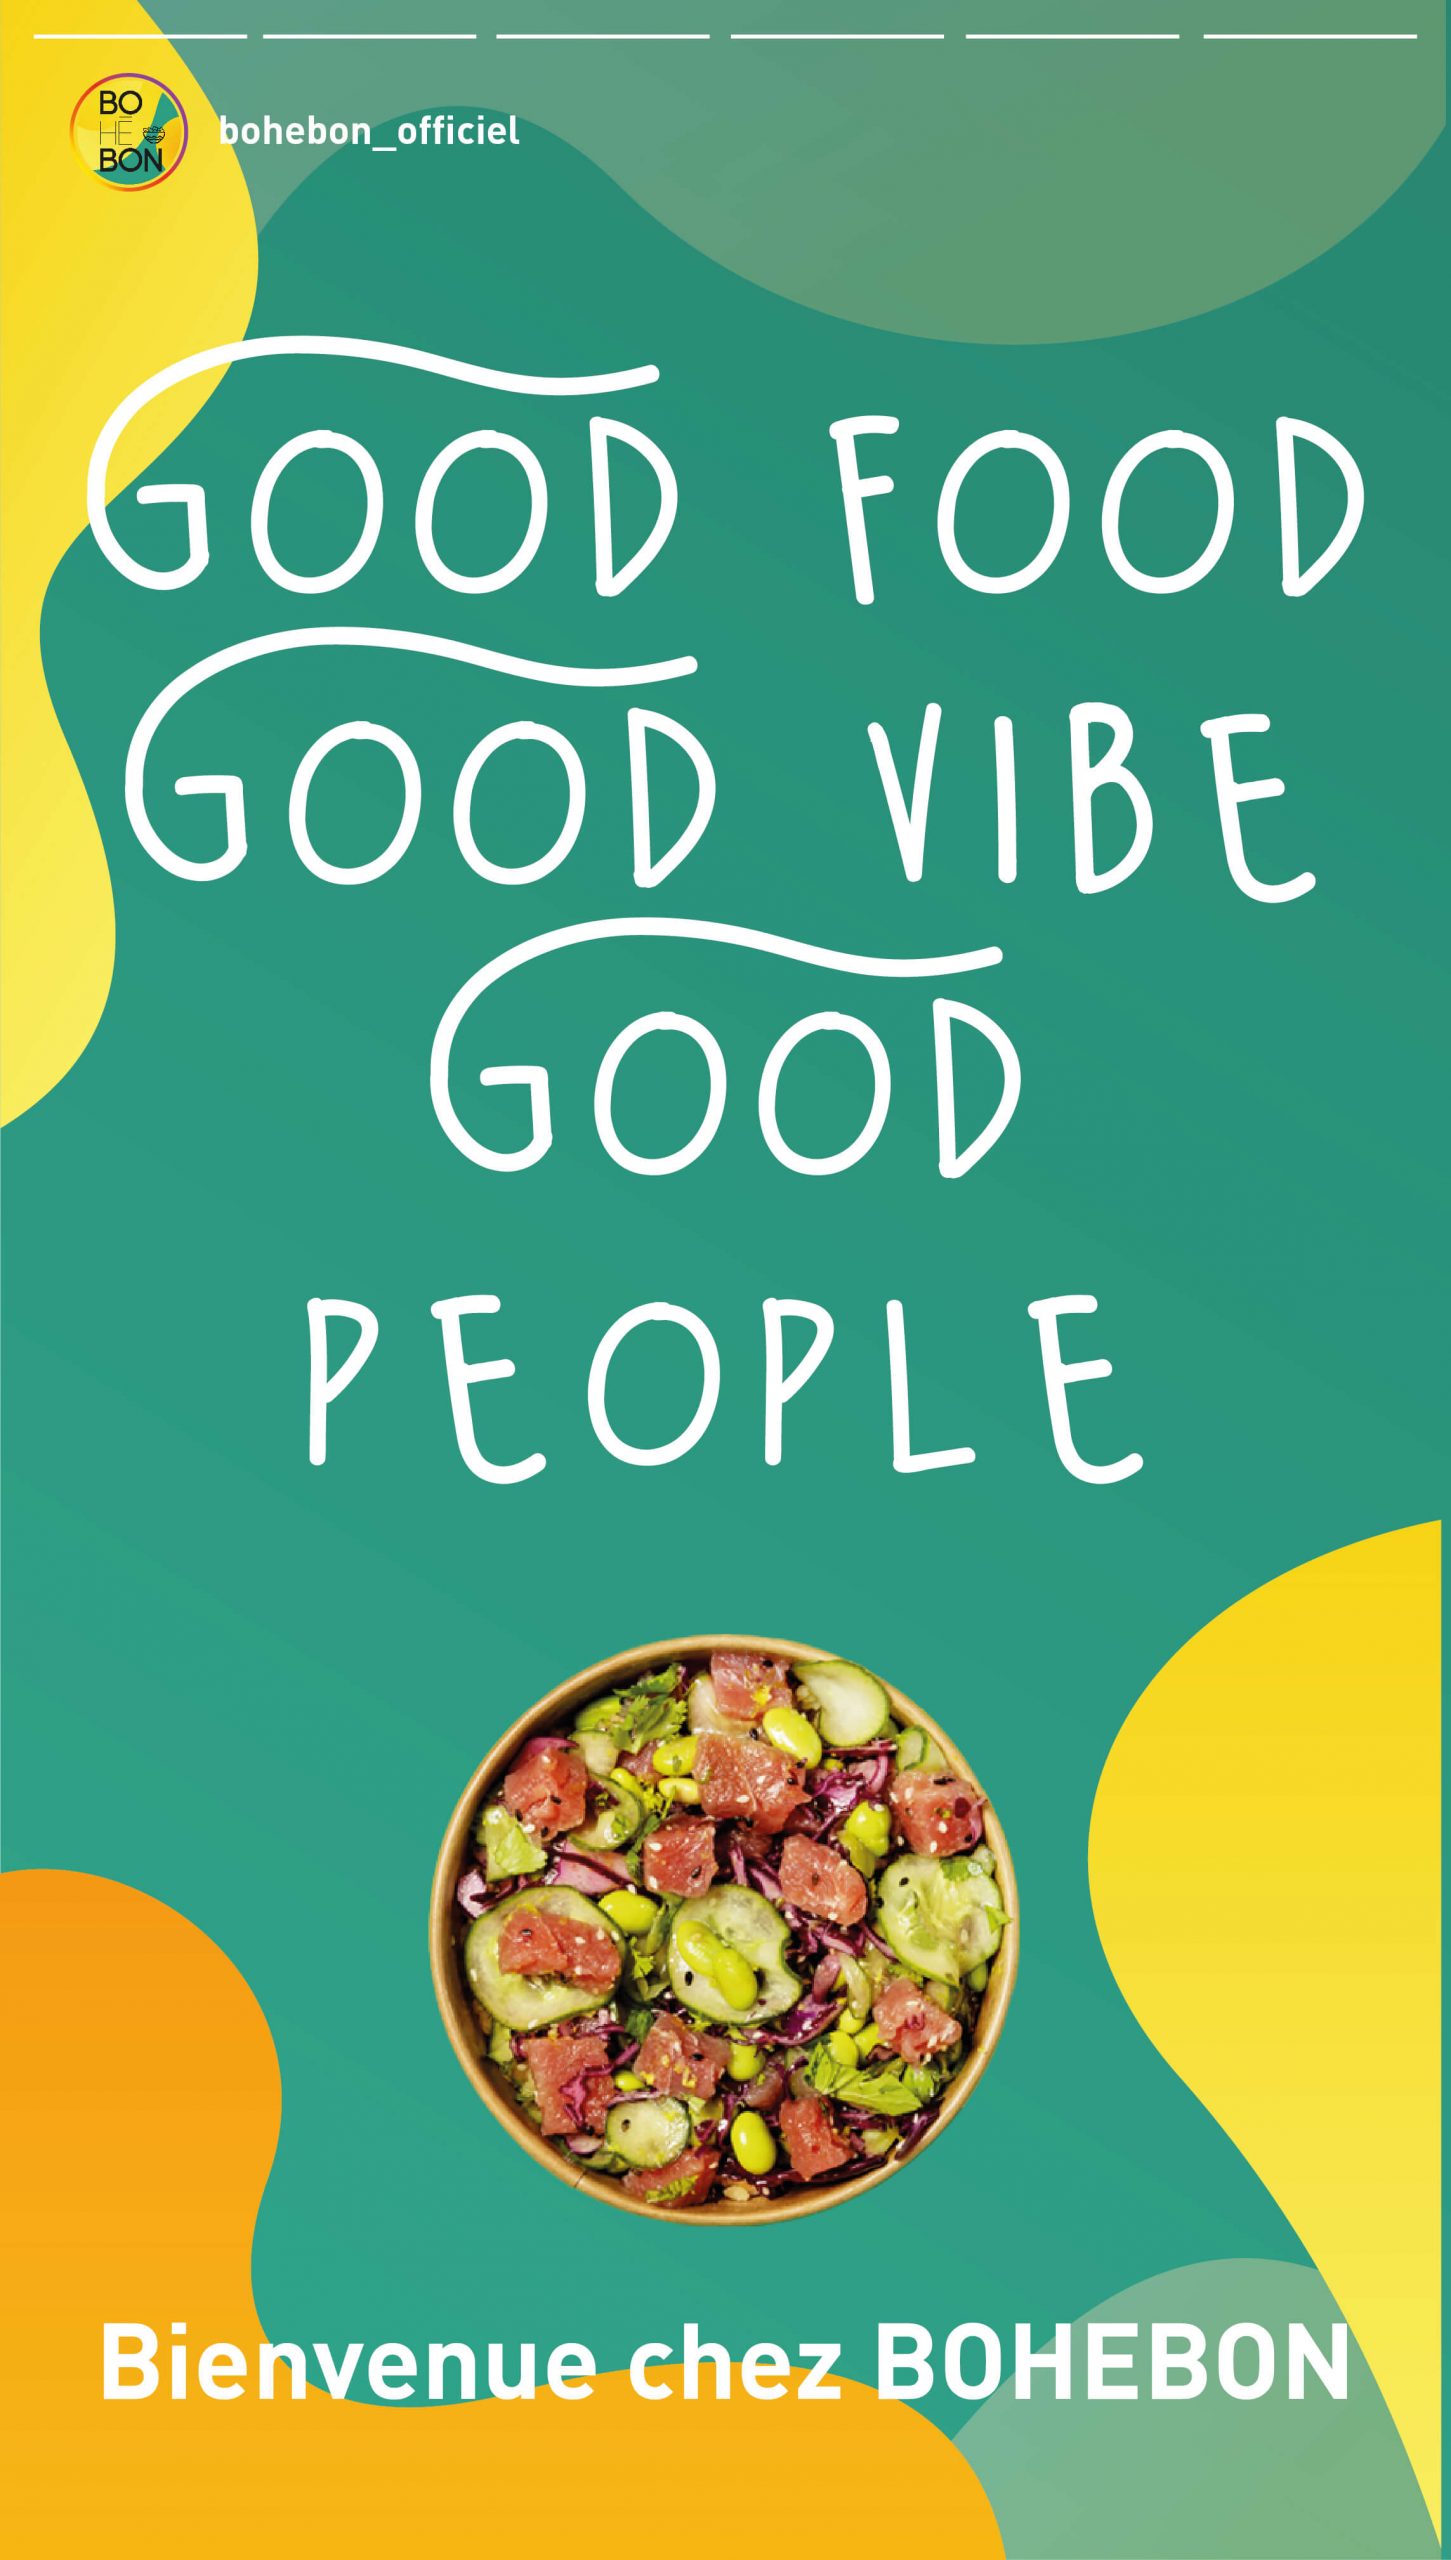 good food good vibe good people